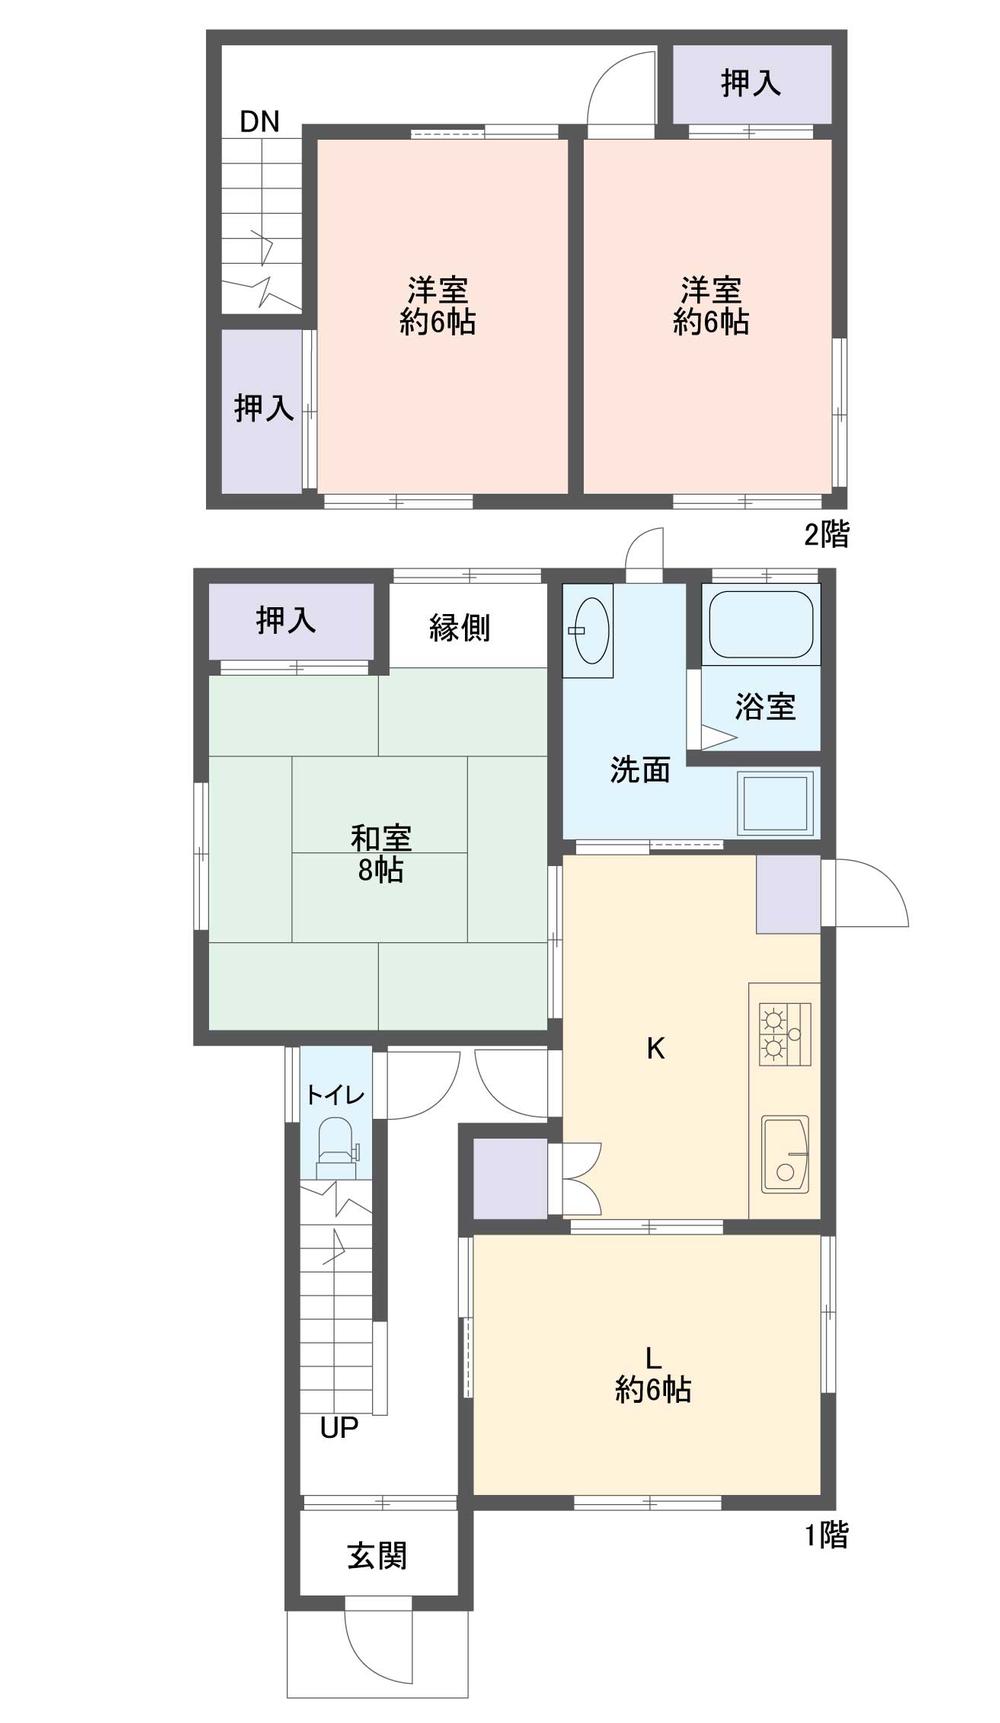 Floor plan. 11.9 million yen, 4DK, Land area 126.53 sq m , Building area 100.96 sq m